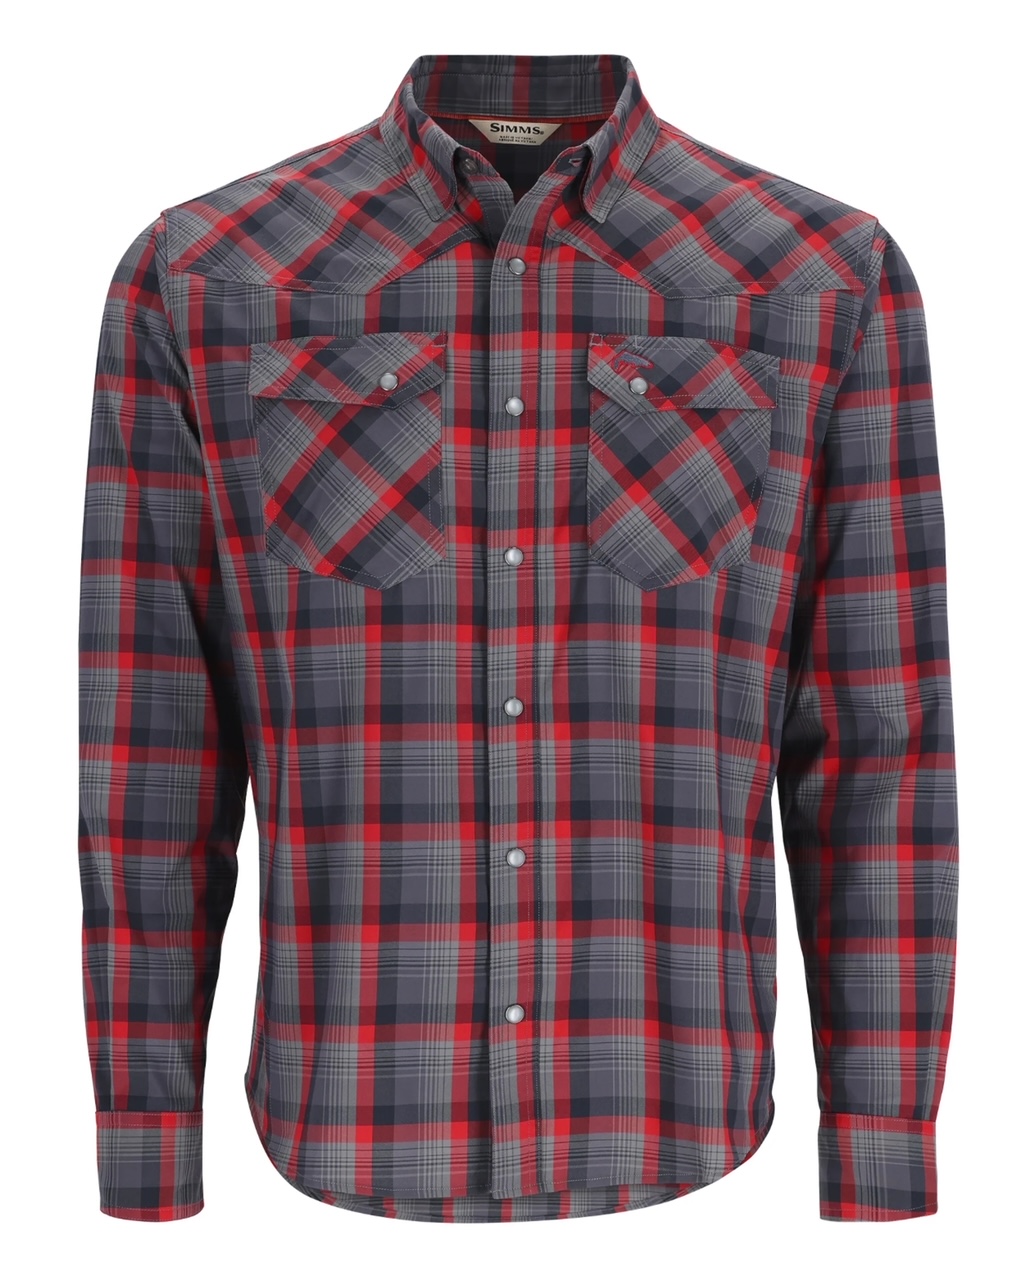 Simms M's Brackett LS Shirt - Auburn Red/Black Window Plaid - XXL